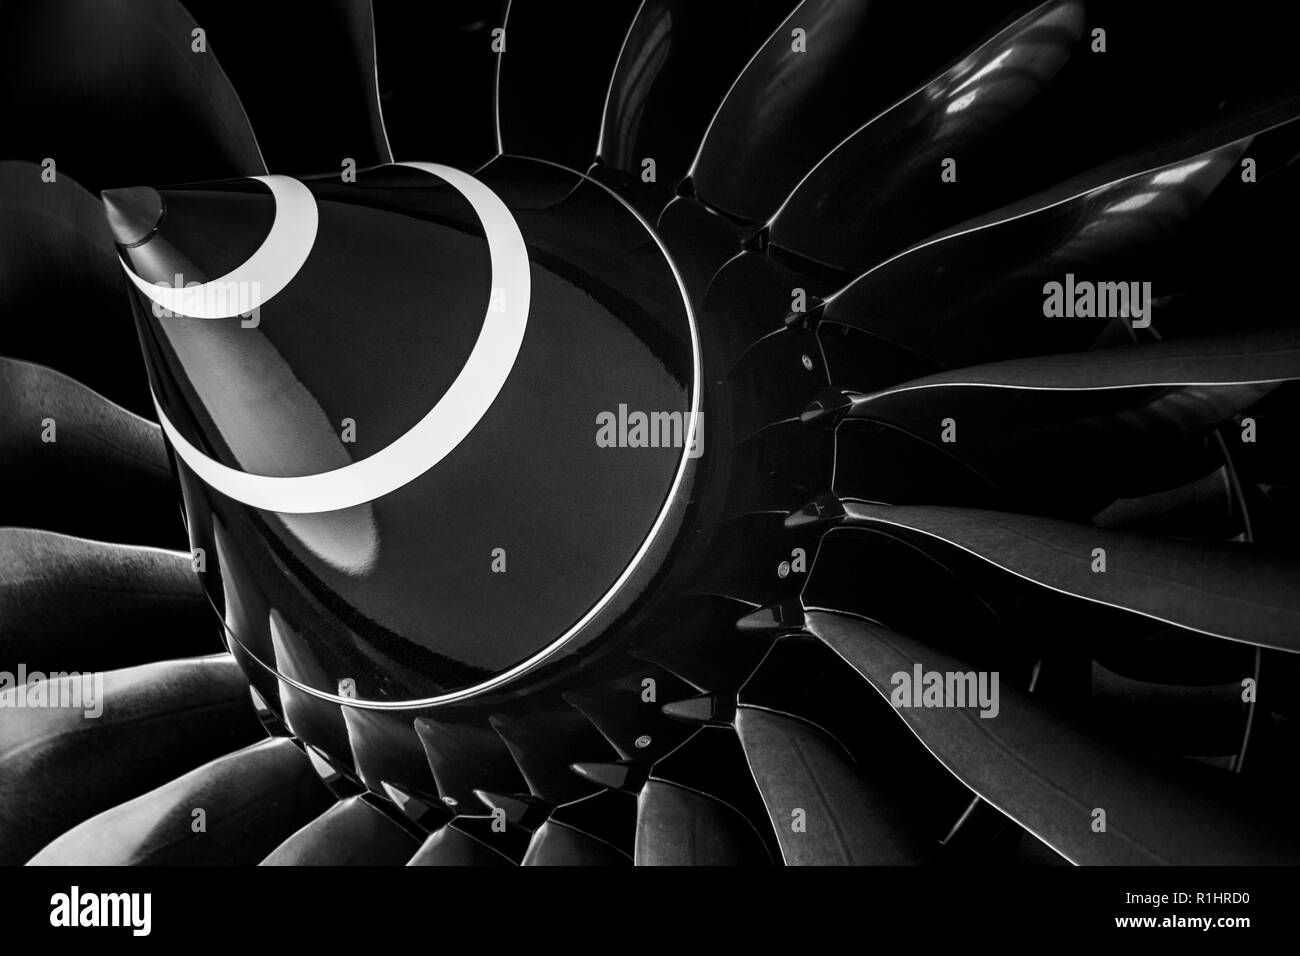 Rolls-Royce moteur à réaction sur un avion d'El Al 787-9 Dreamliner Banque D'Images